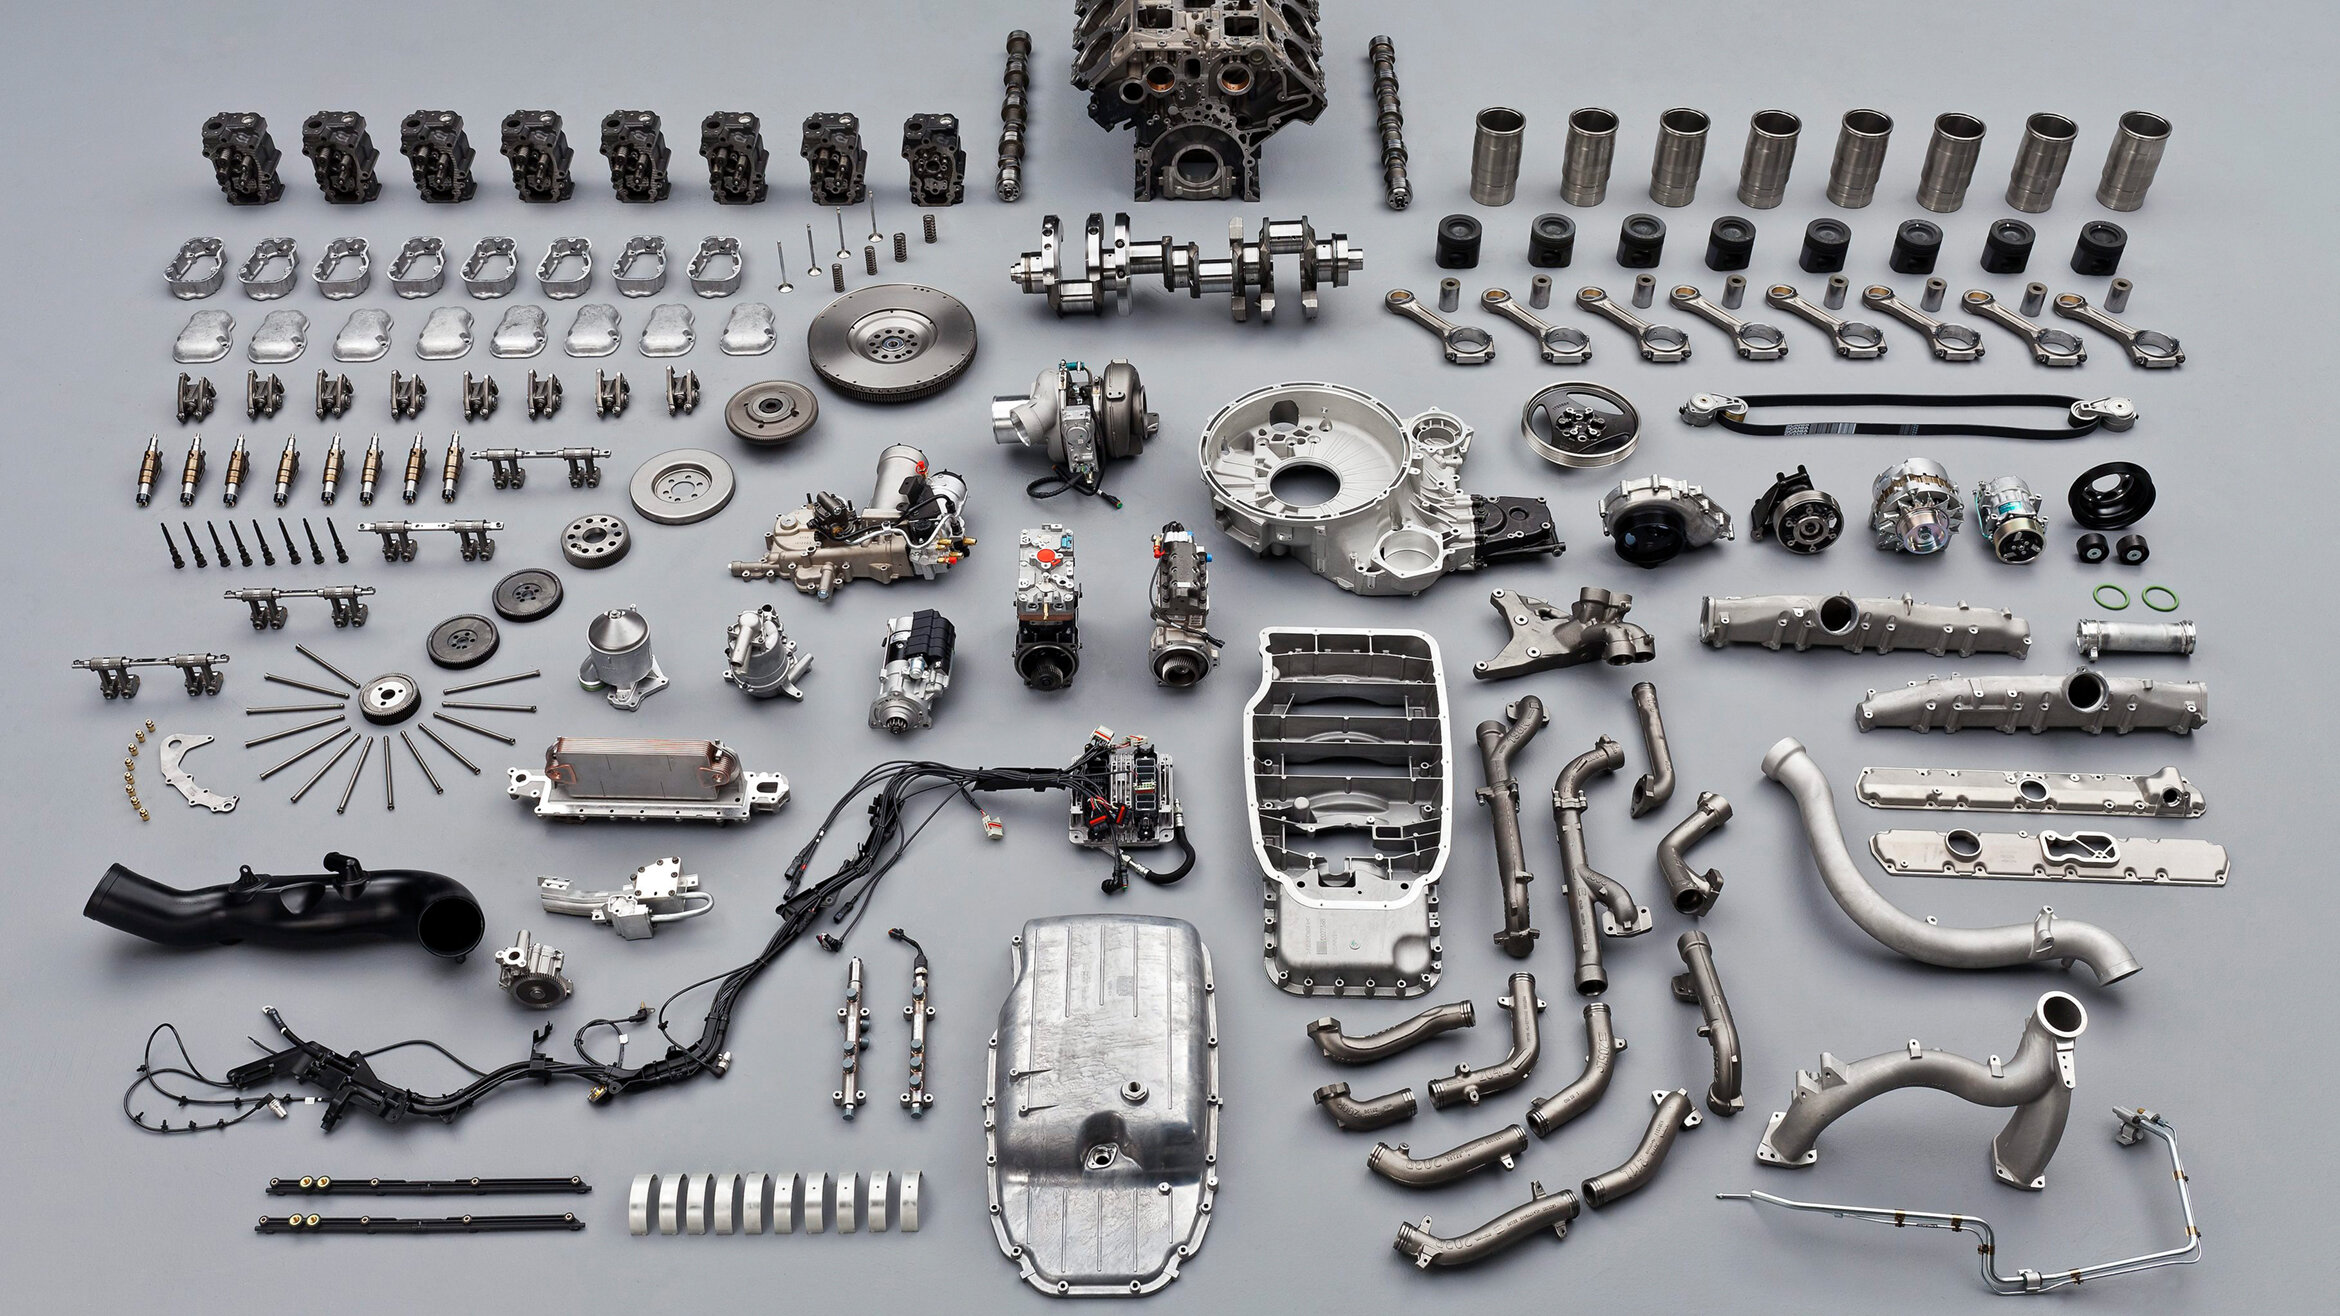 Scania V8 engine in parts in studio.
Photo: Dan Boman 2011